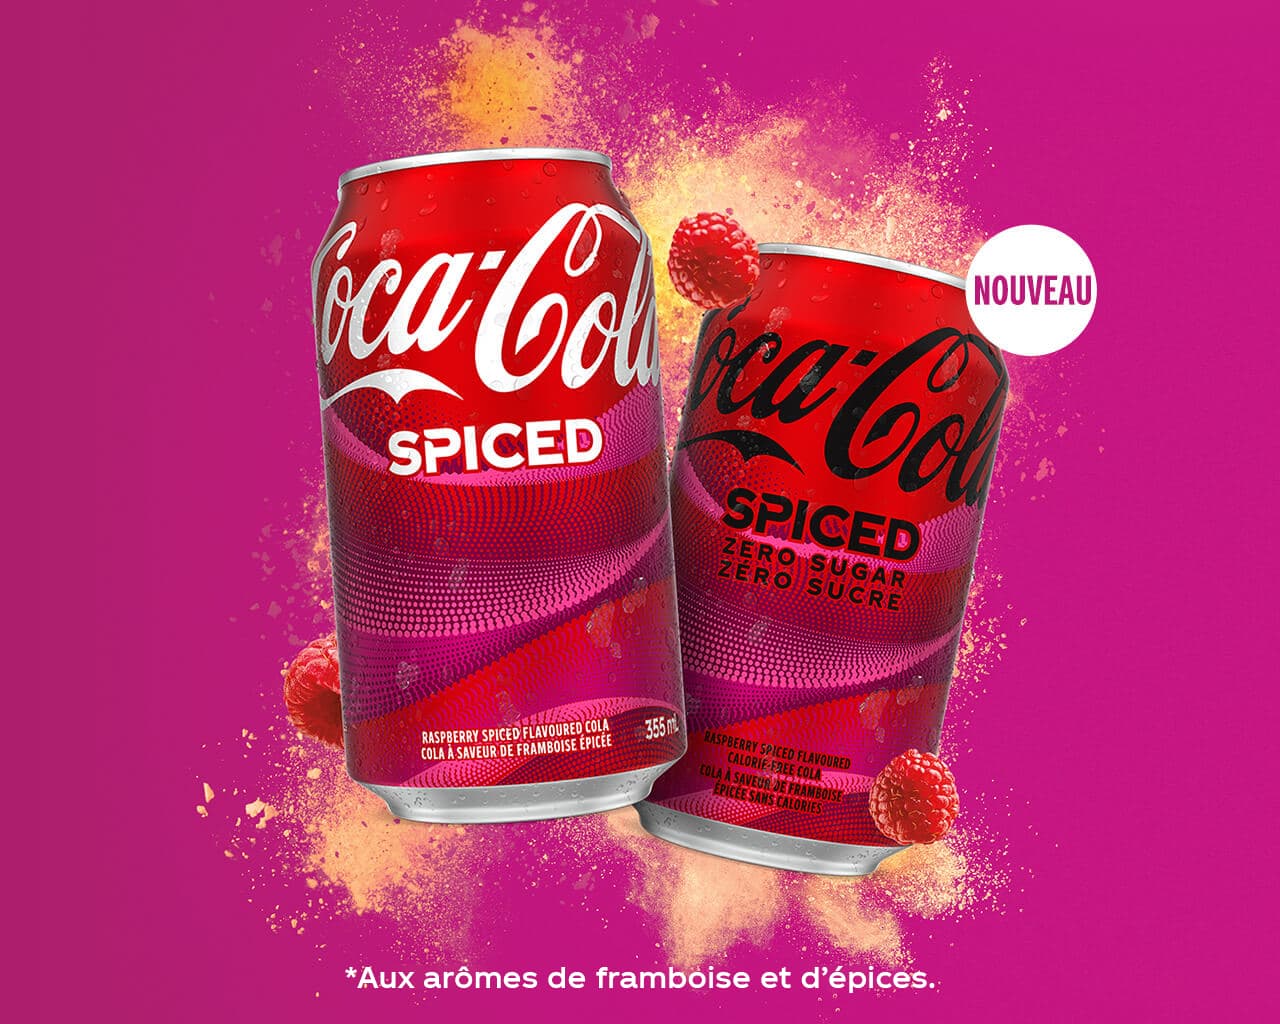 NOUVEAU Coca-Cola Spiced. *Aux arômes de framboise et d’épices.’